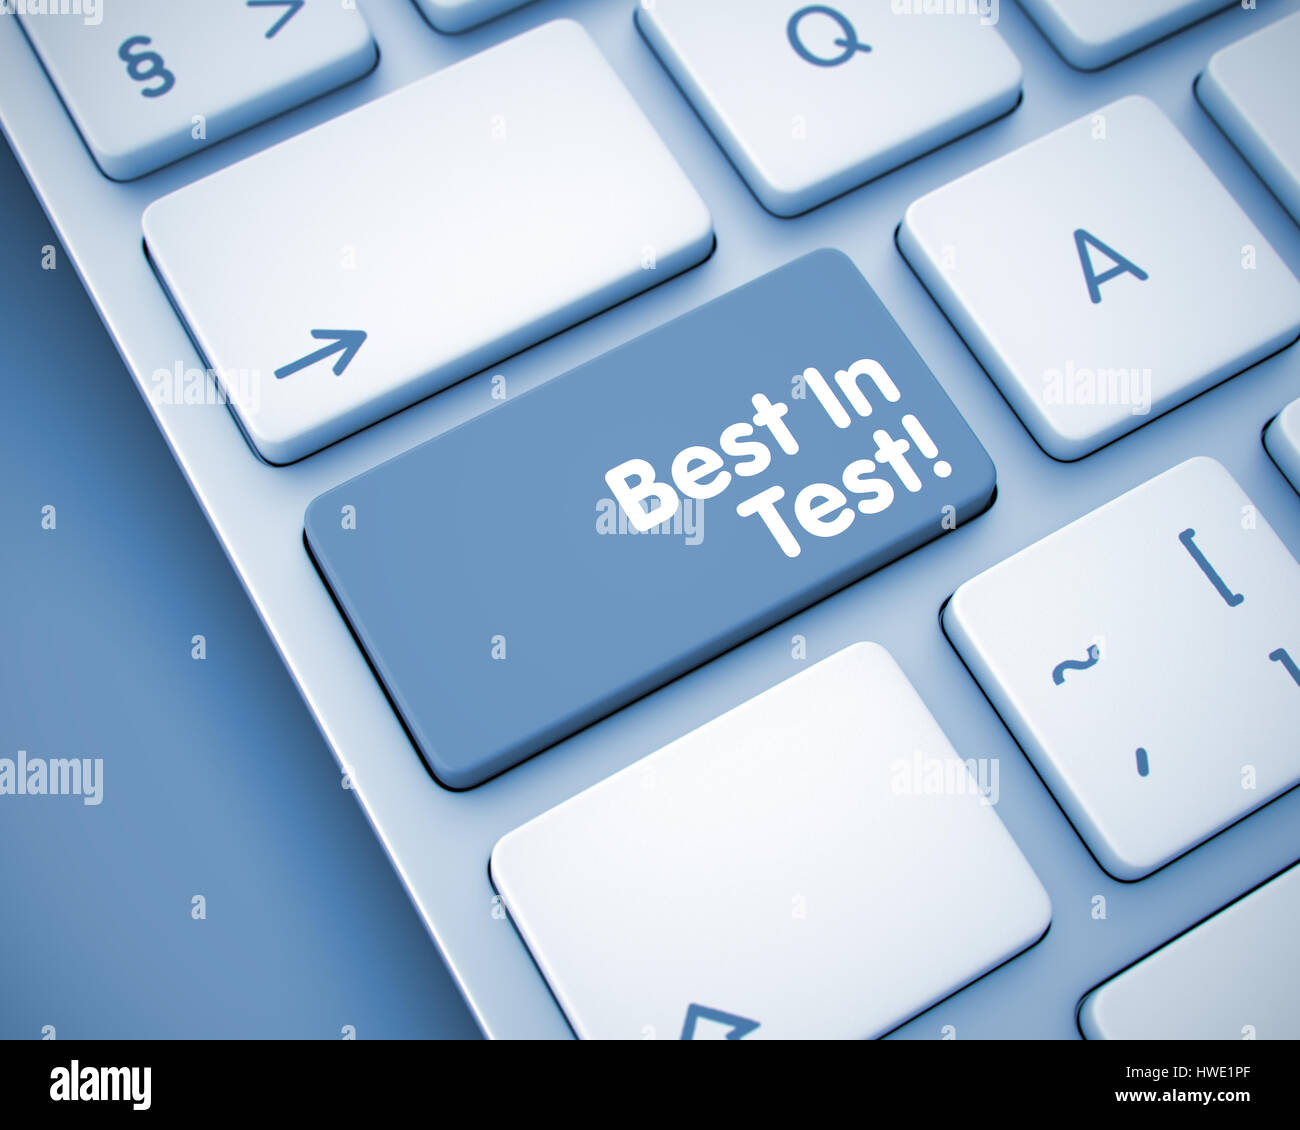 Le meilleur dans les tests - Inscription sur une touche du clavier. 3D. Banque D'Images